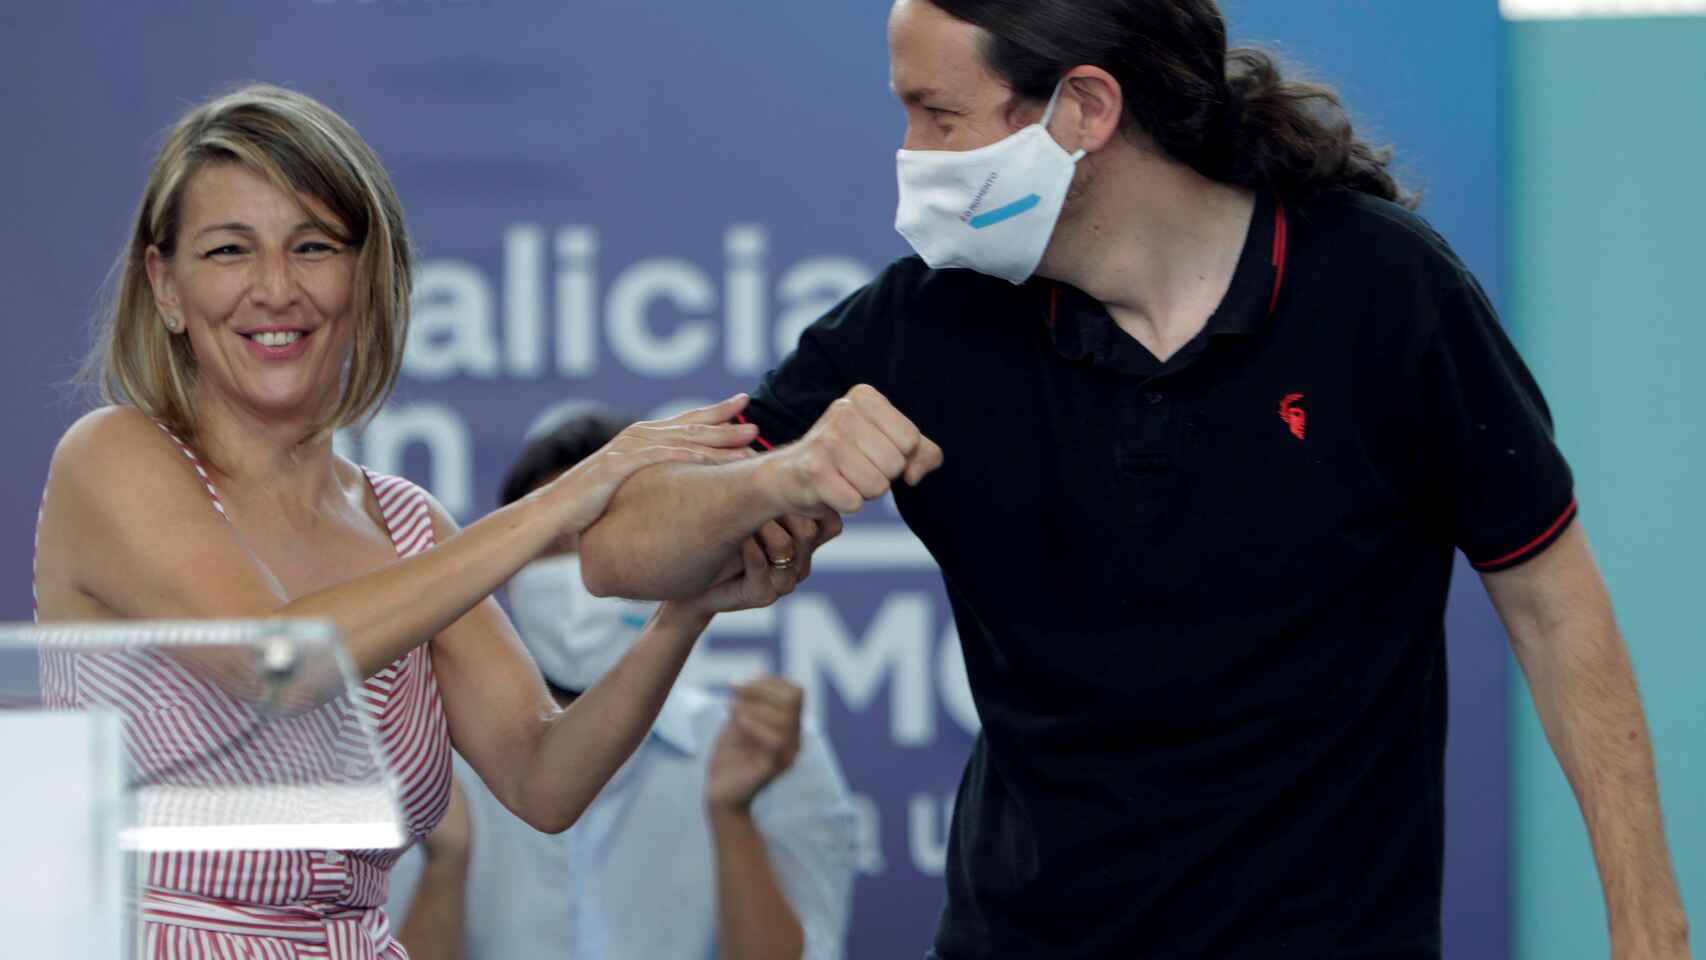 Pablo Iglesias quitte le gouvernement et propose Yolanda Díaz (IU/PCE) pour lui succéder